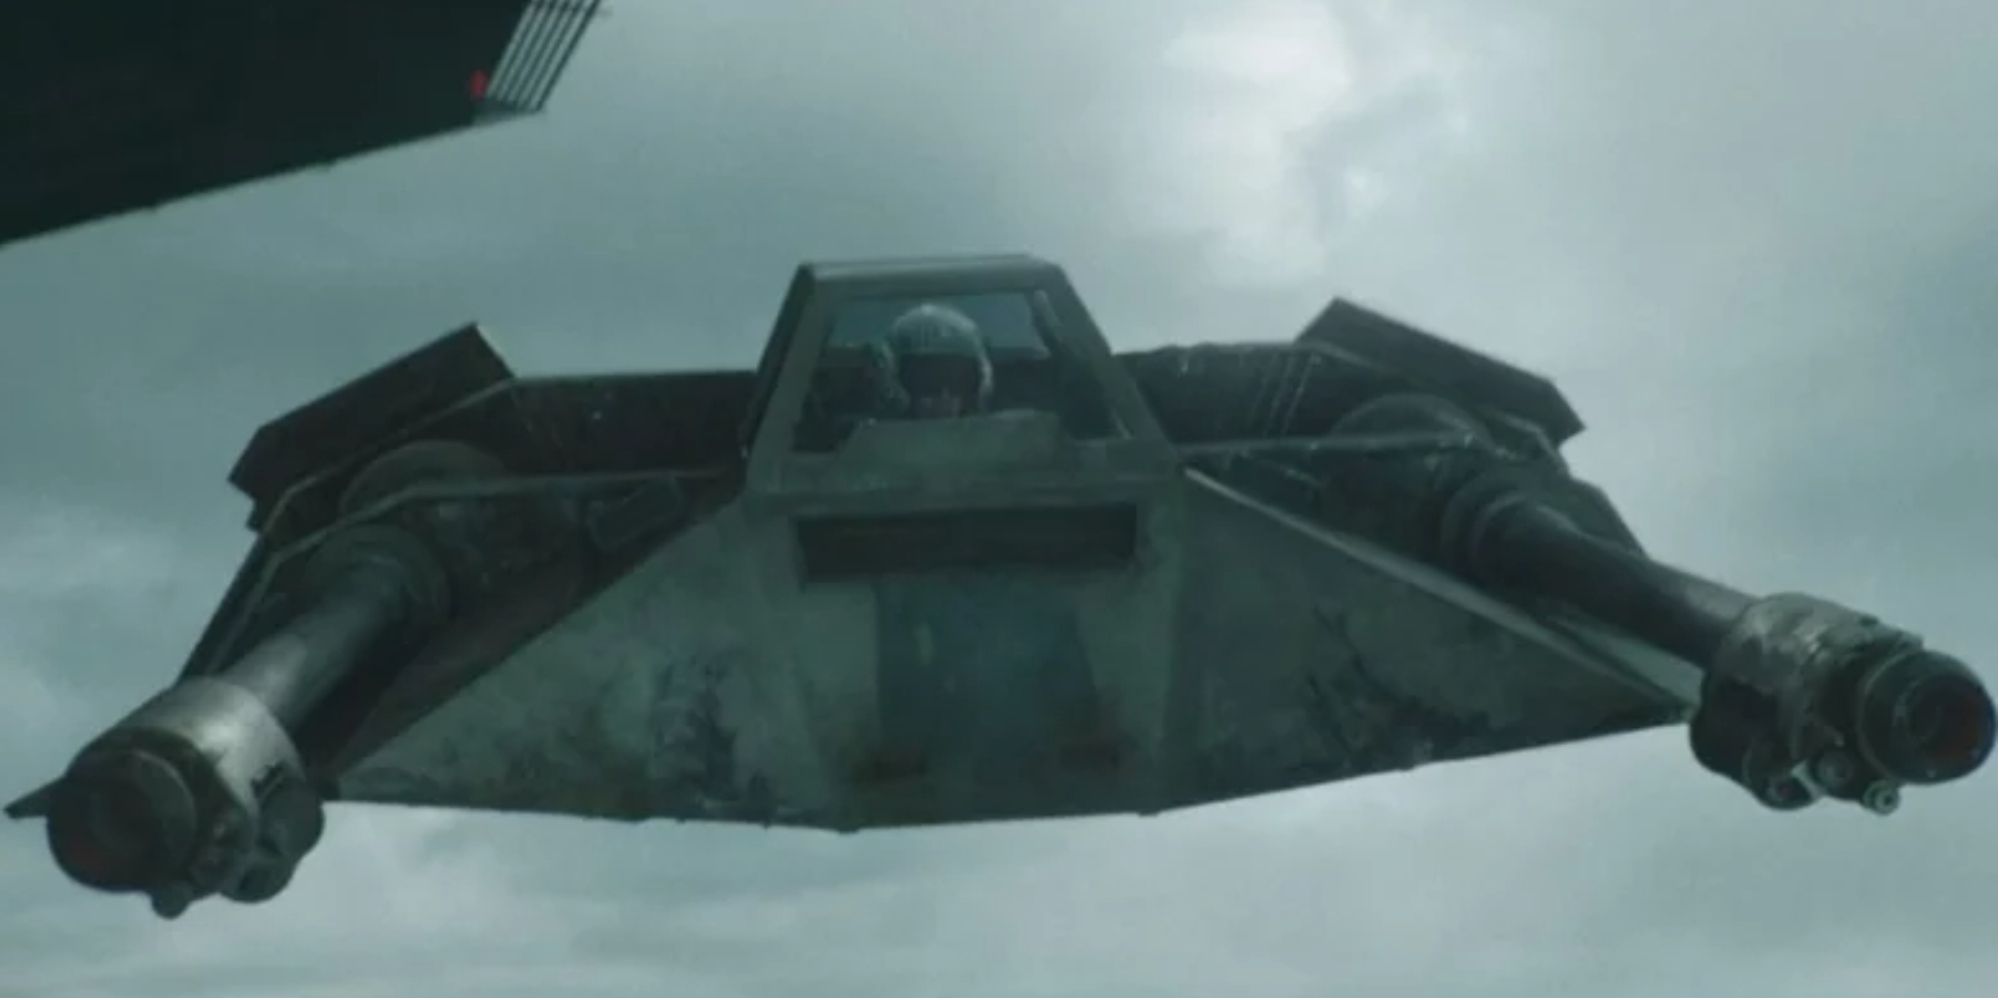 Оби-Ван Кеноби: этот аэроспидер является оригинальной моделью снежных спидеров.